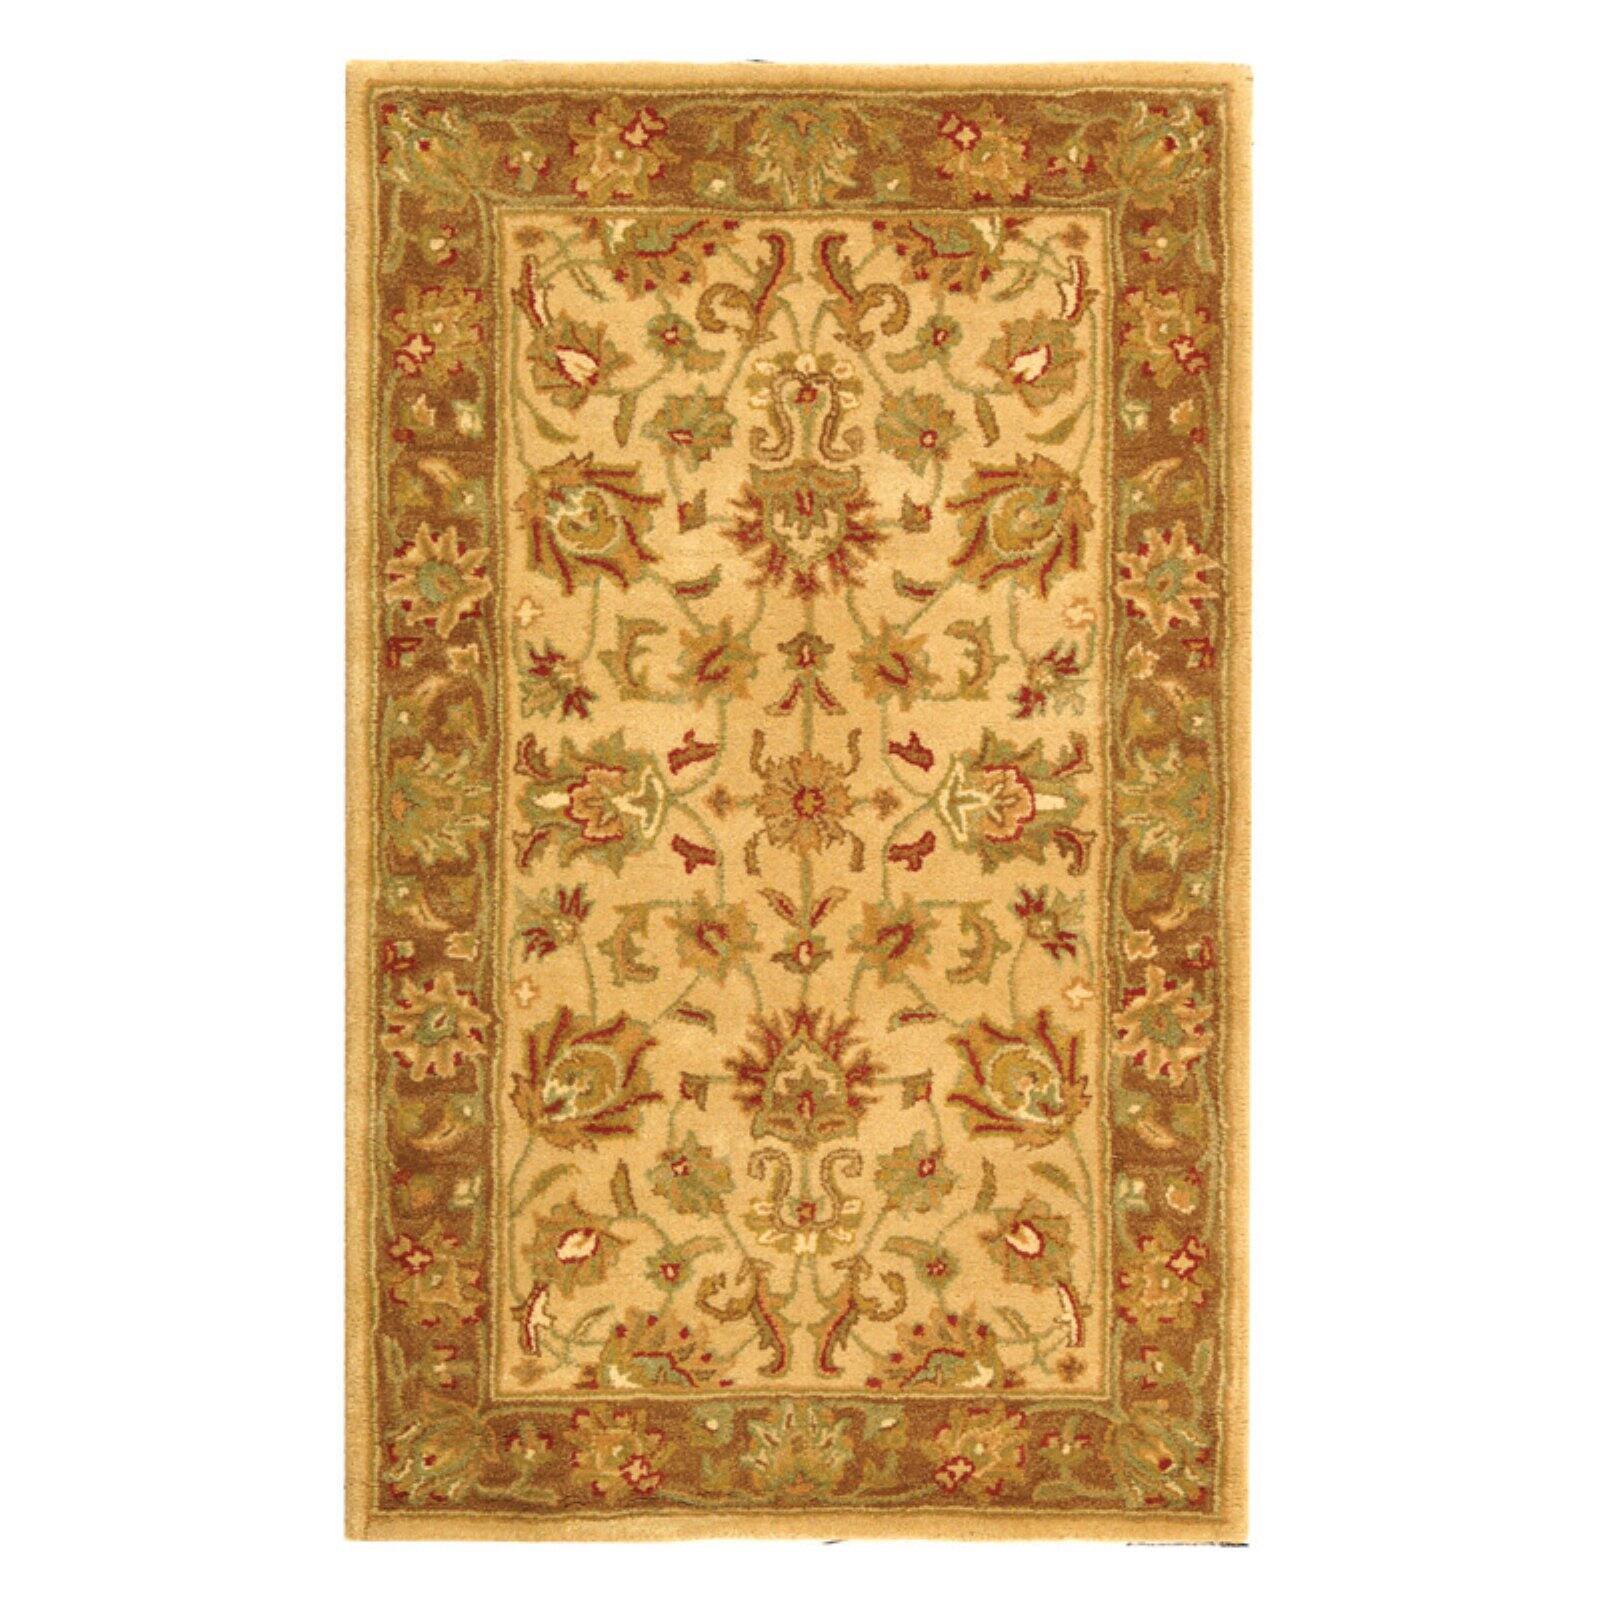 SAFAVIEH Heritage Regis Traditional Wool Runner Rug, Ivory/Brown, 2'3" x 8' - image 5 of 9